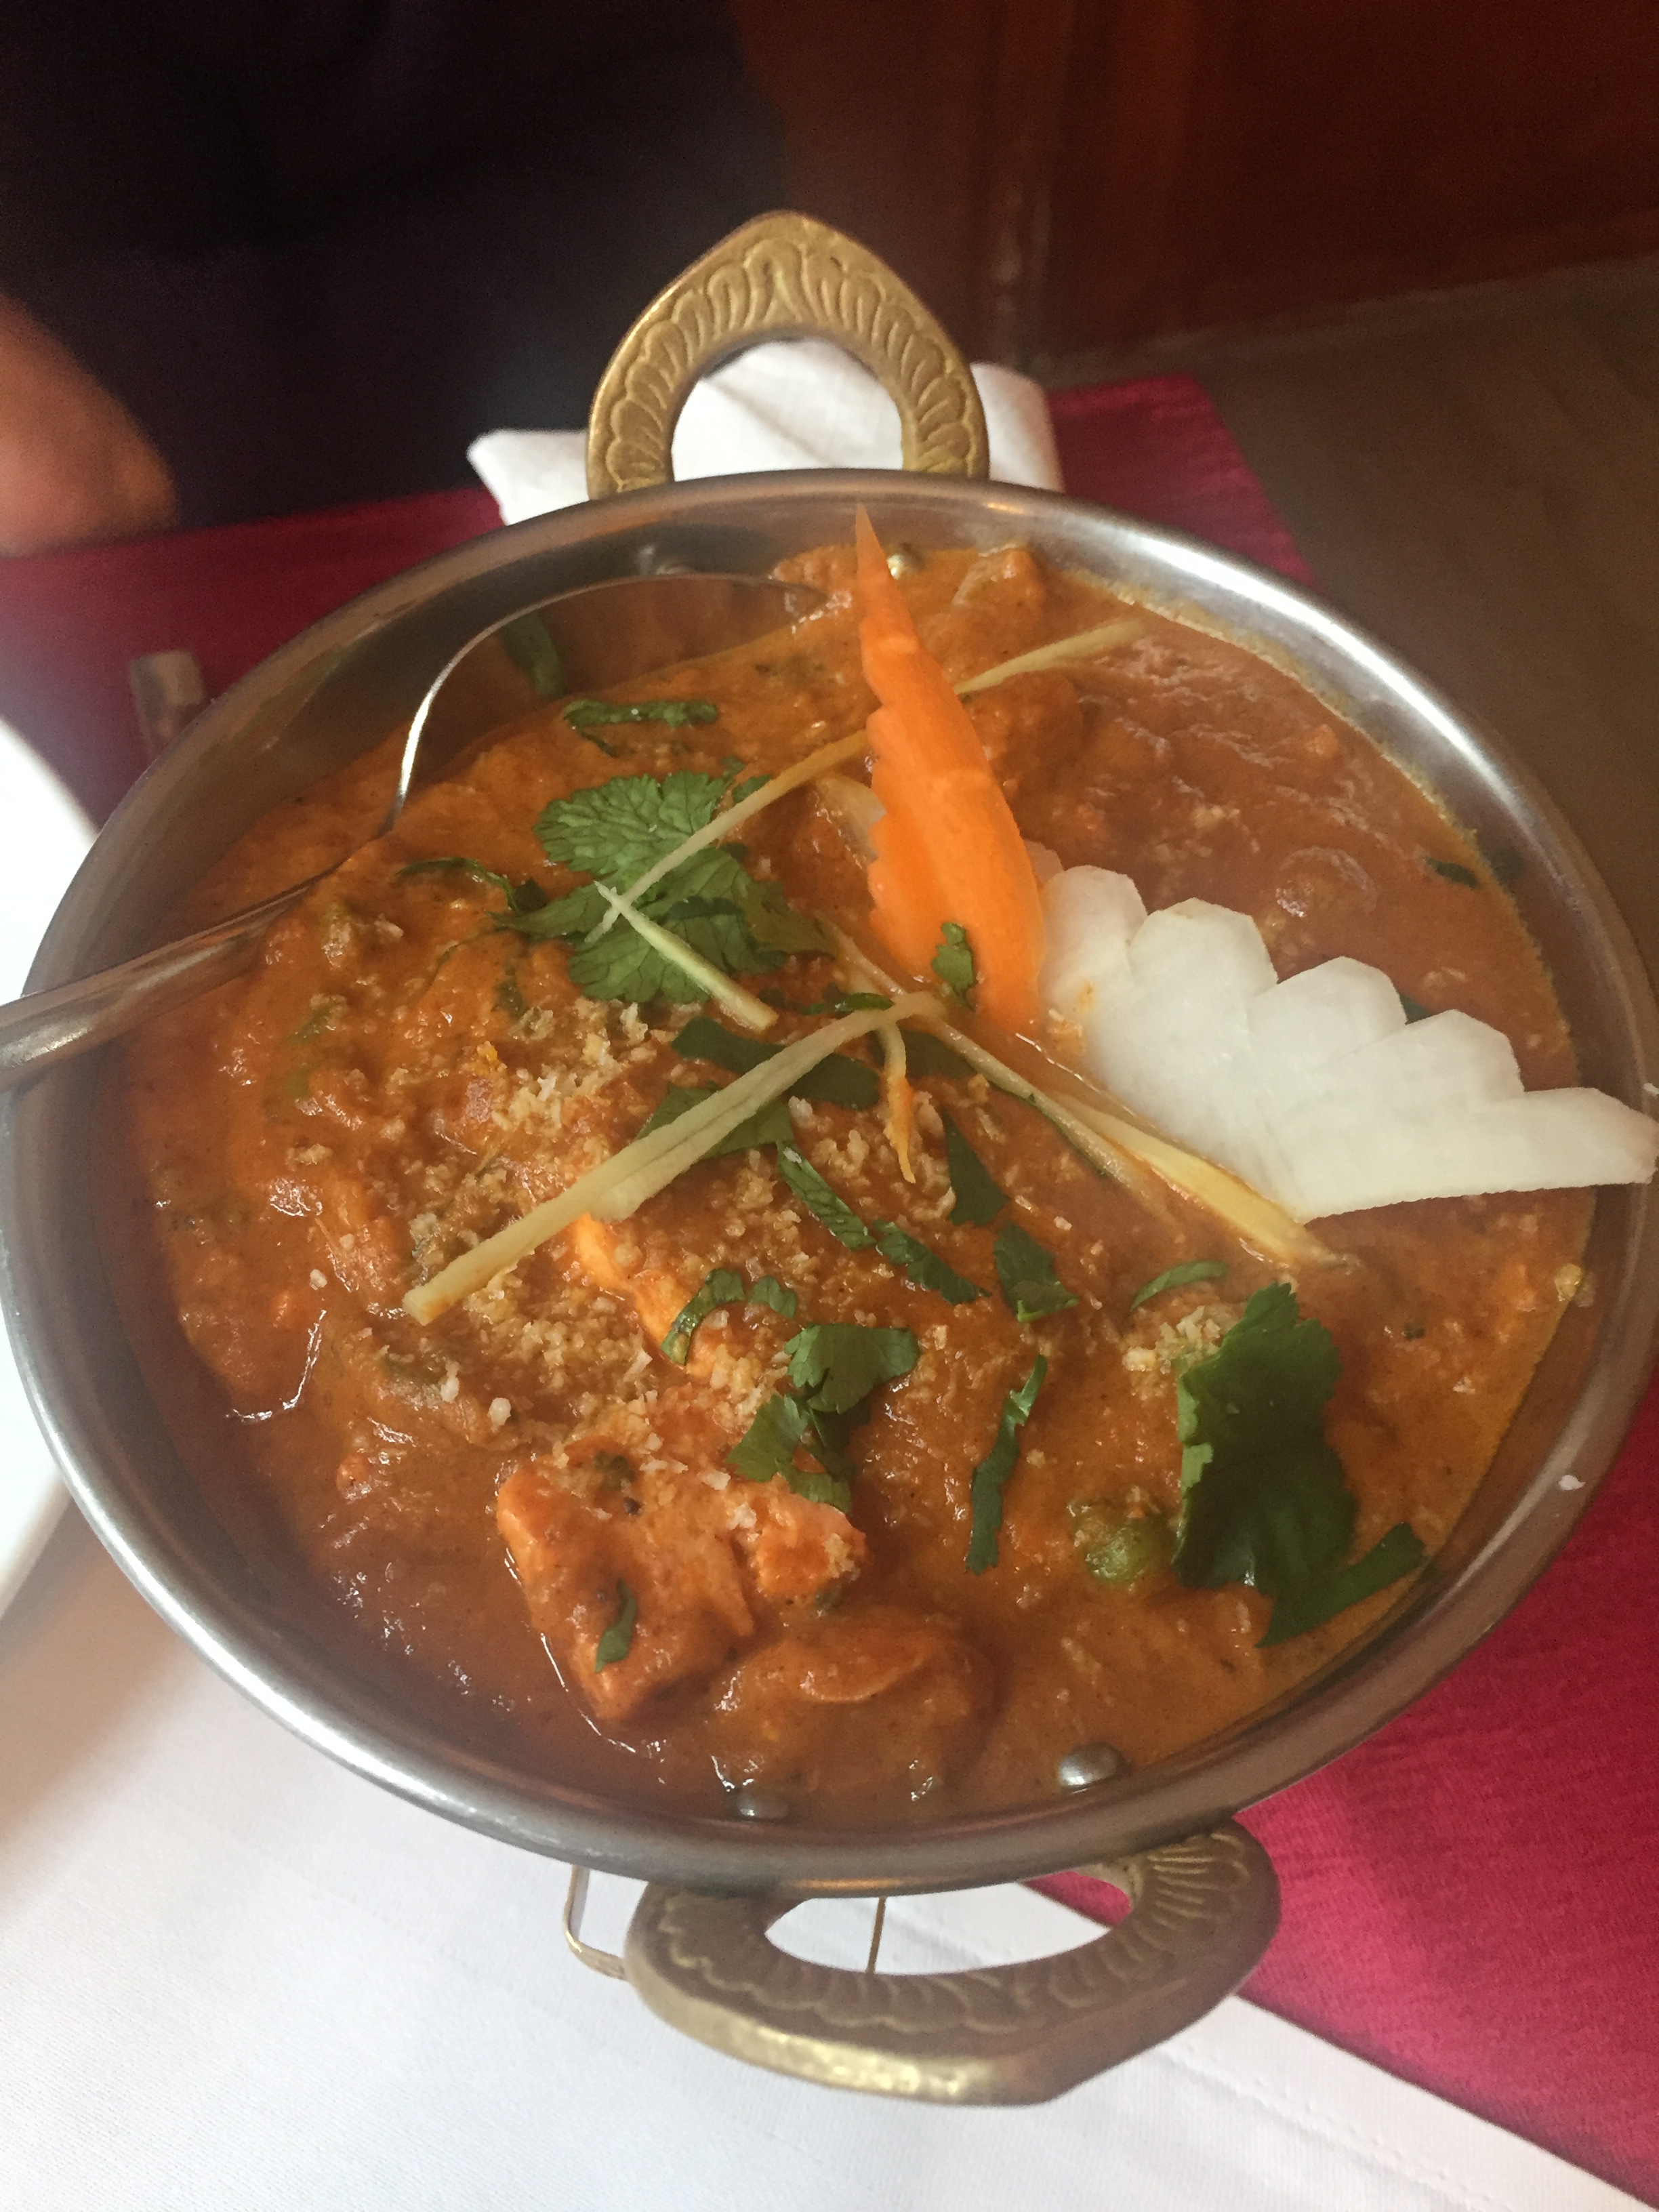 Sabzi Madras (vegan)
frisches Gemüse in einem Curry aus Kokosnusscreme und Chili nach südindischer Art